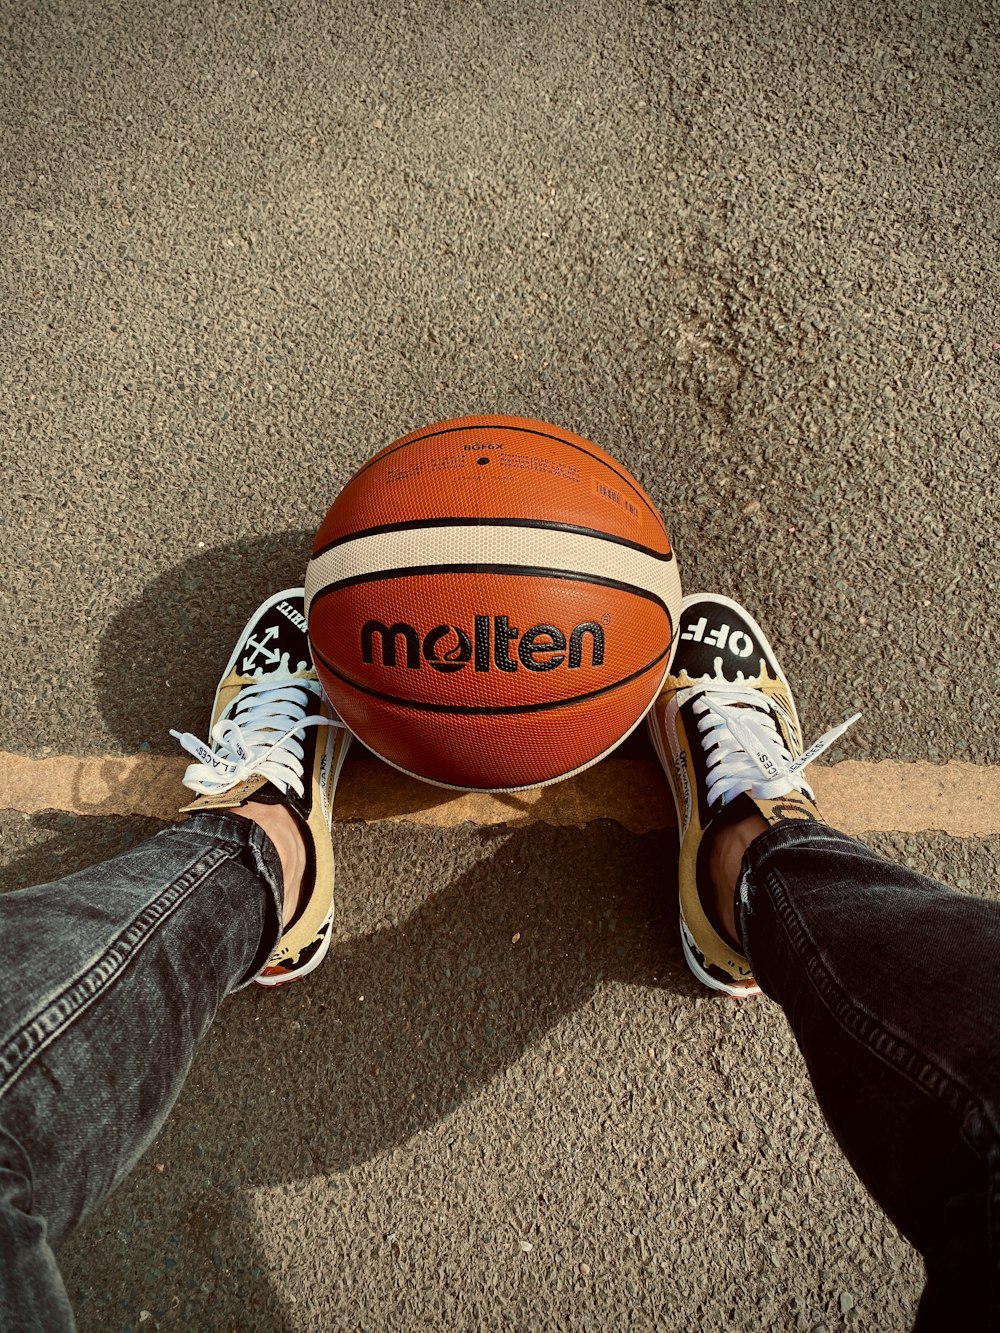 brown basketball on brown sand